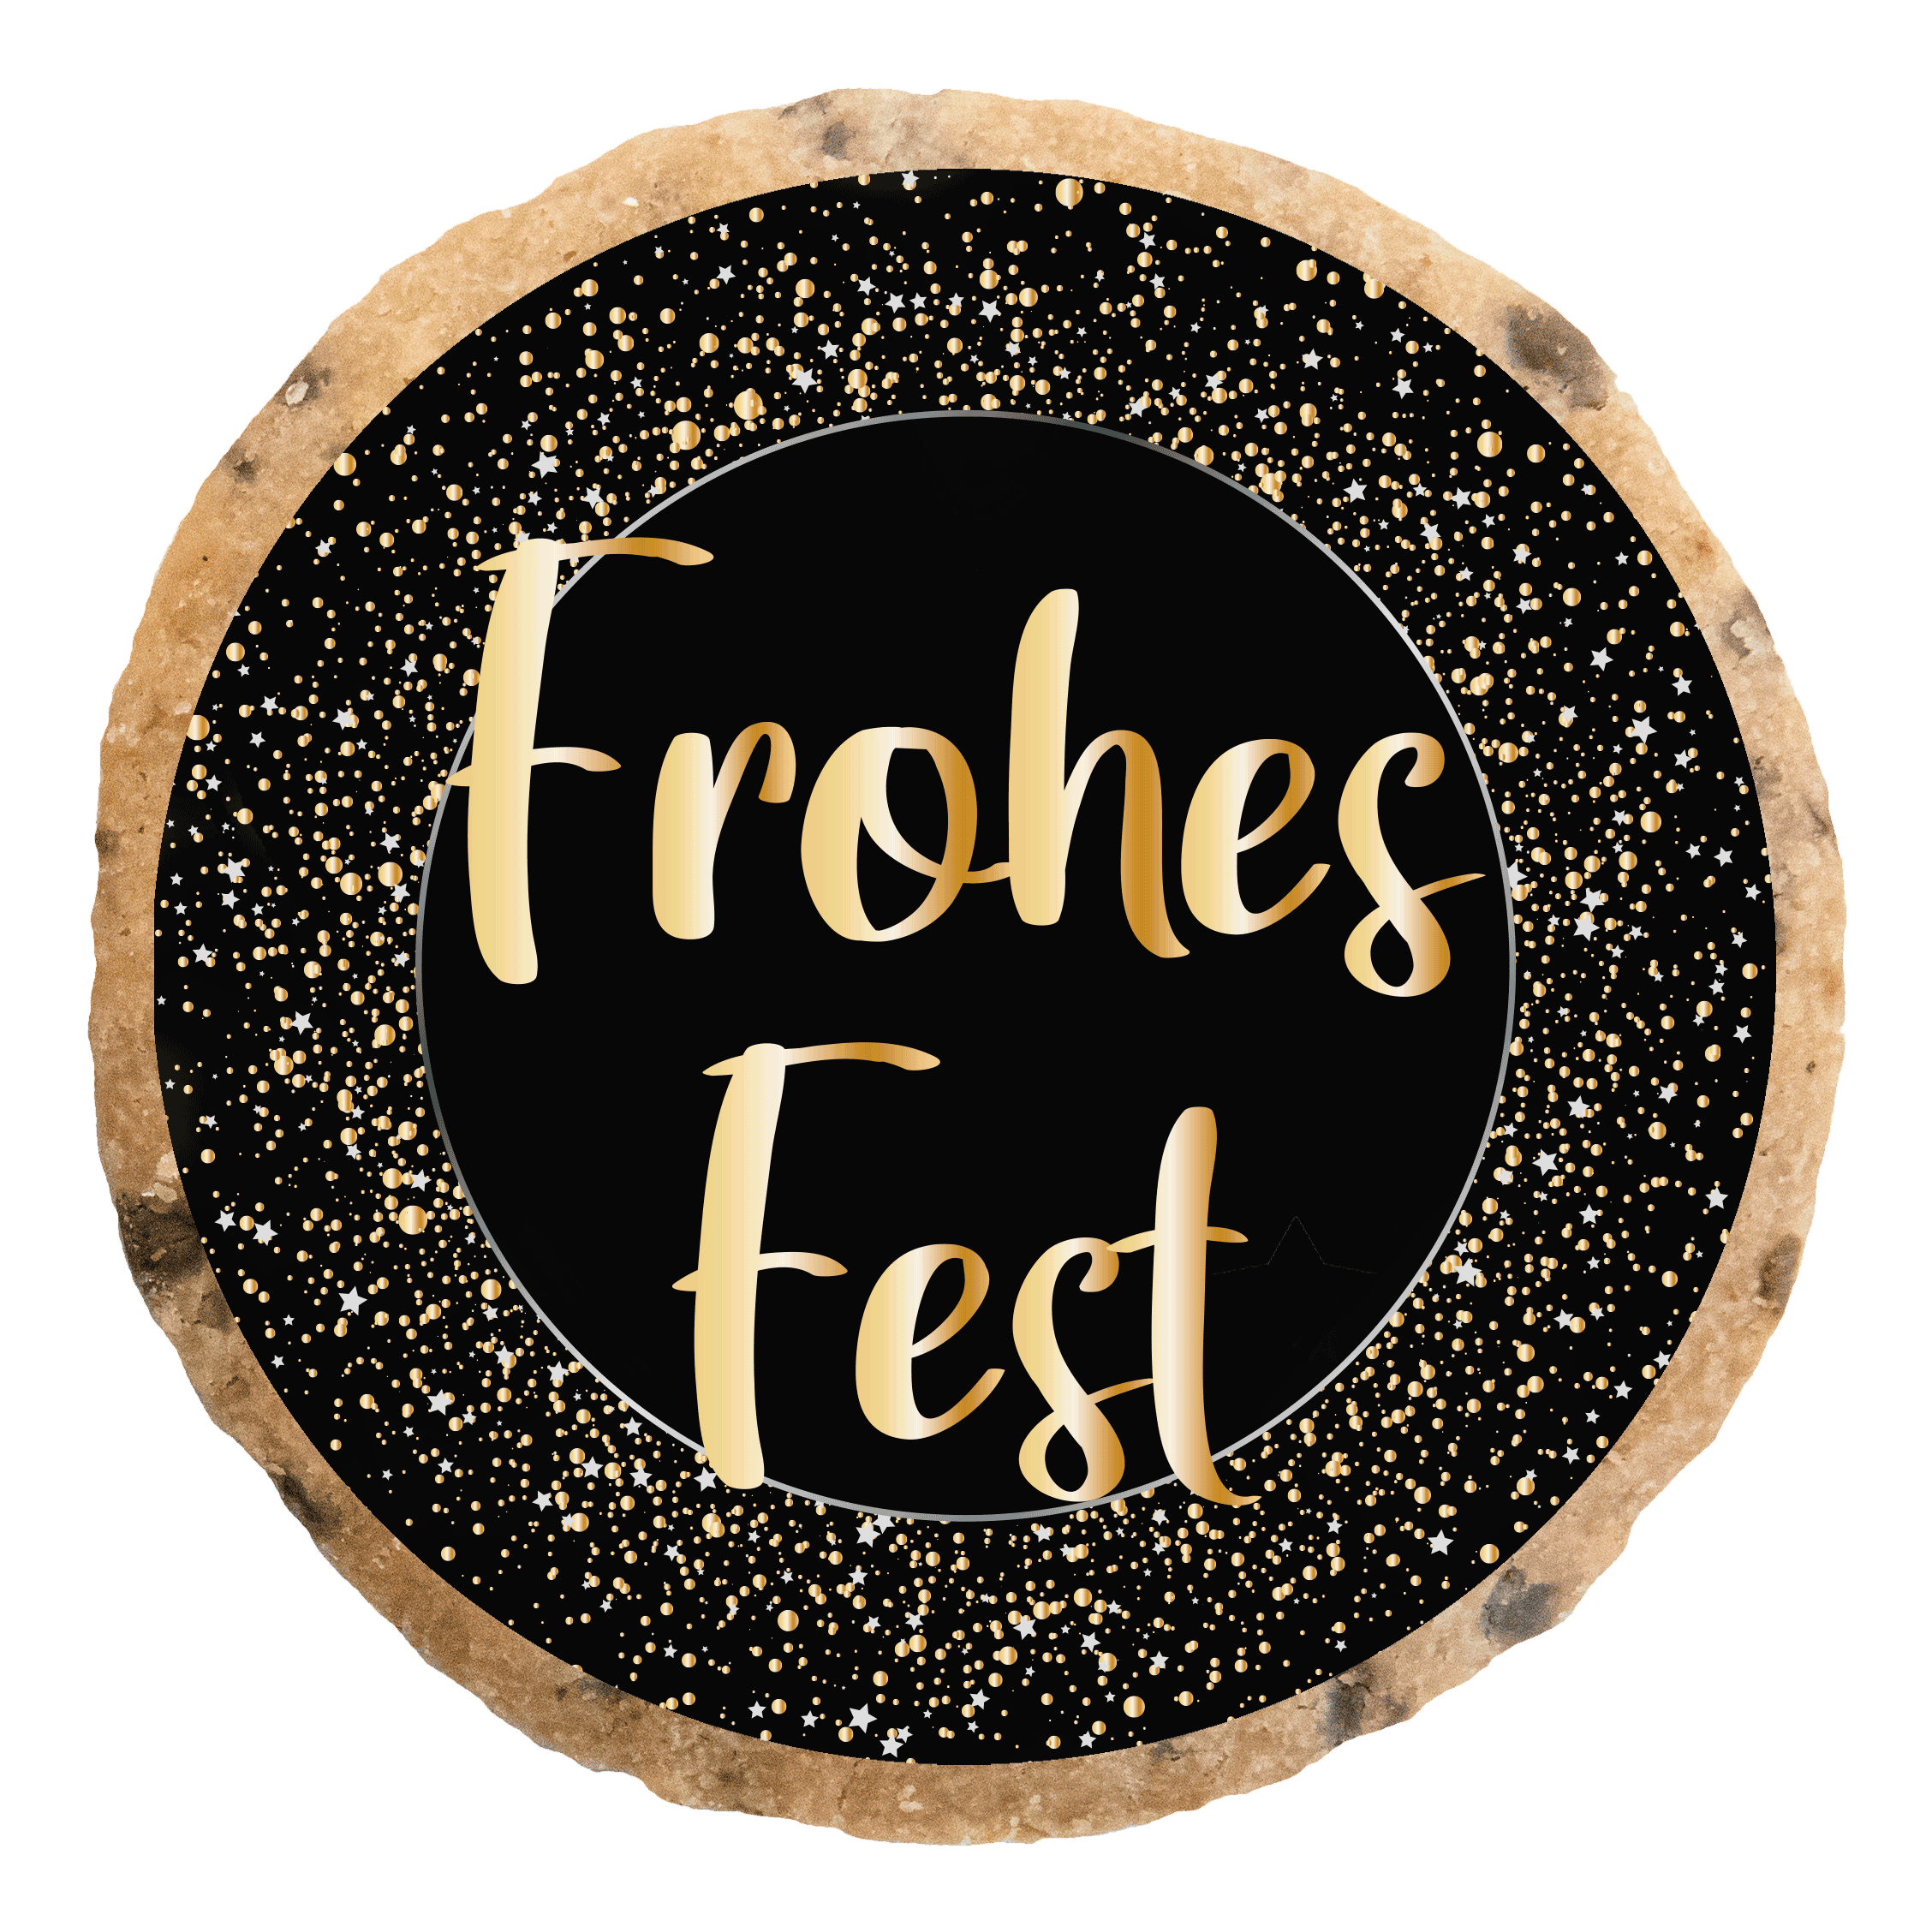 "Frohes Fest 8" MotivKEKS